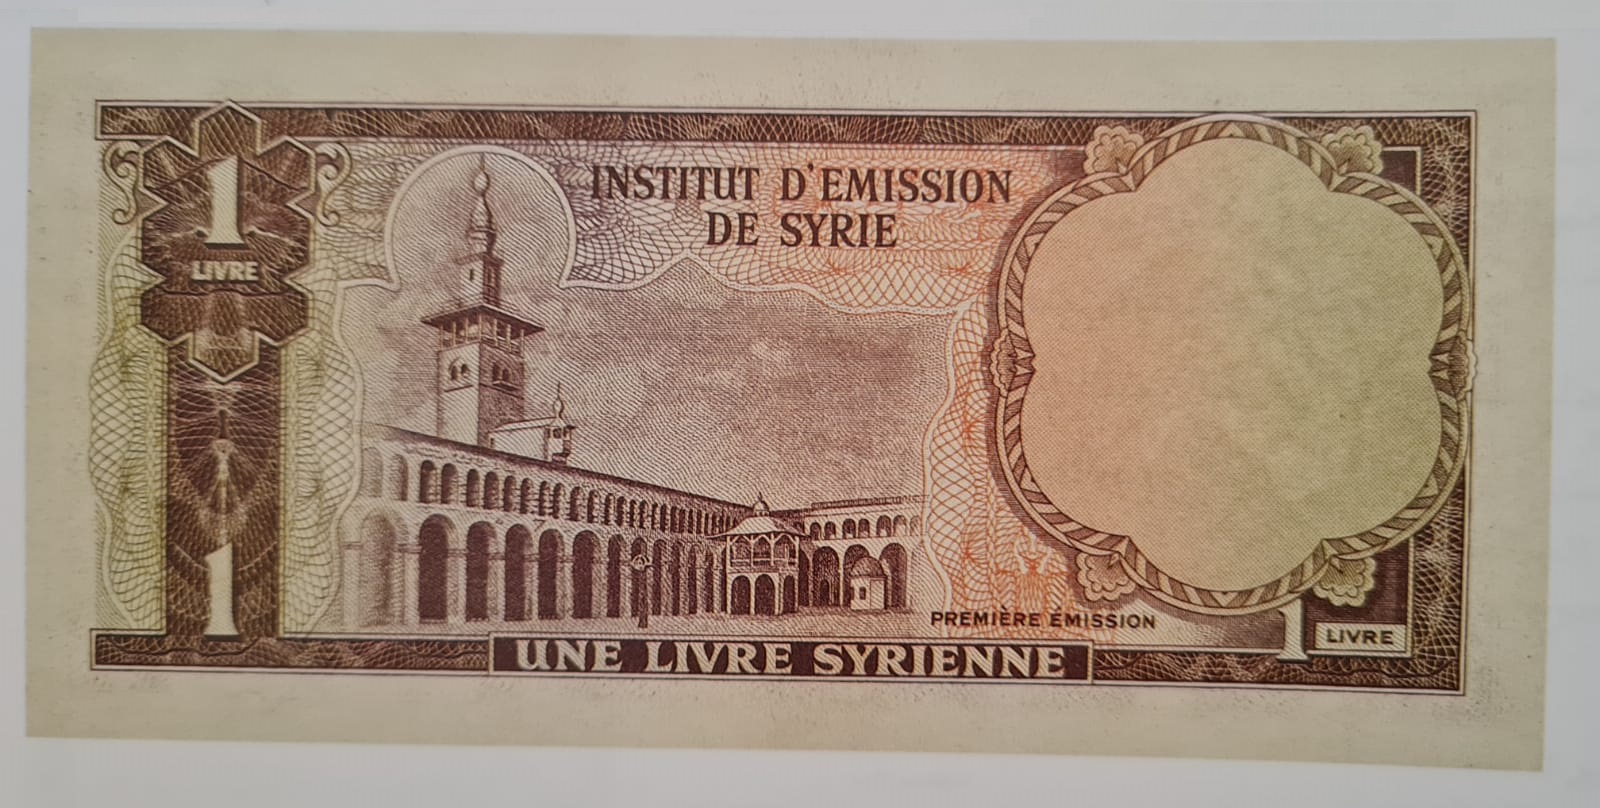 التاريخ السوري المعاصر - النقود والعملات الورقية السورية 1953 – ليرة سورية واحدة